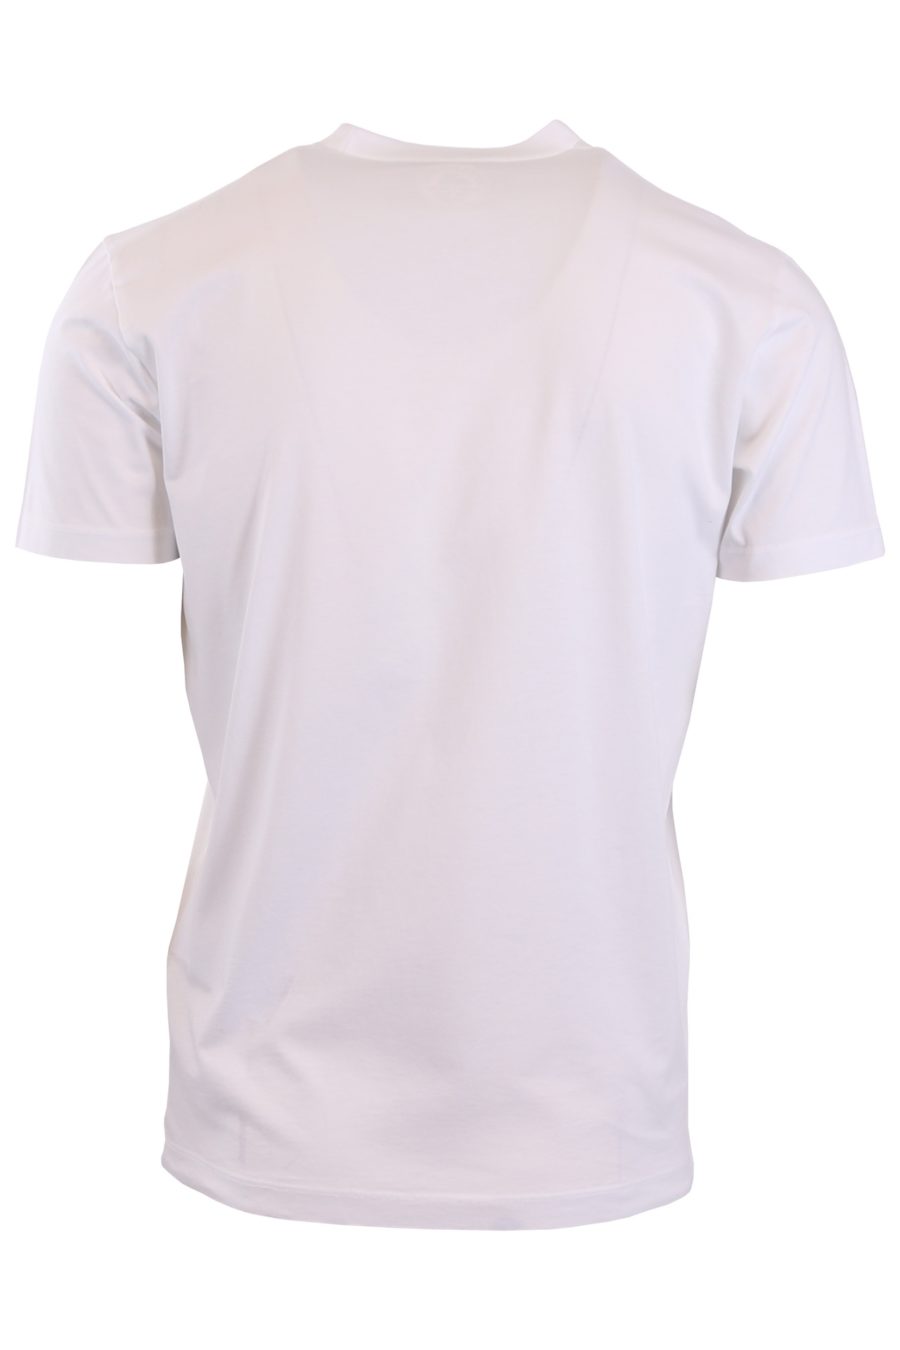 Dsquared2 T-shirt blanc avec "Icon" réfléchissant - dd14afe55cec14fe84e987d14aa486316f6046d3